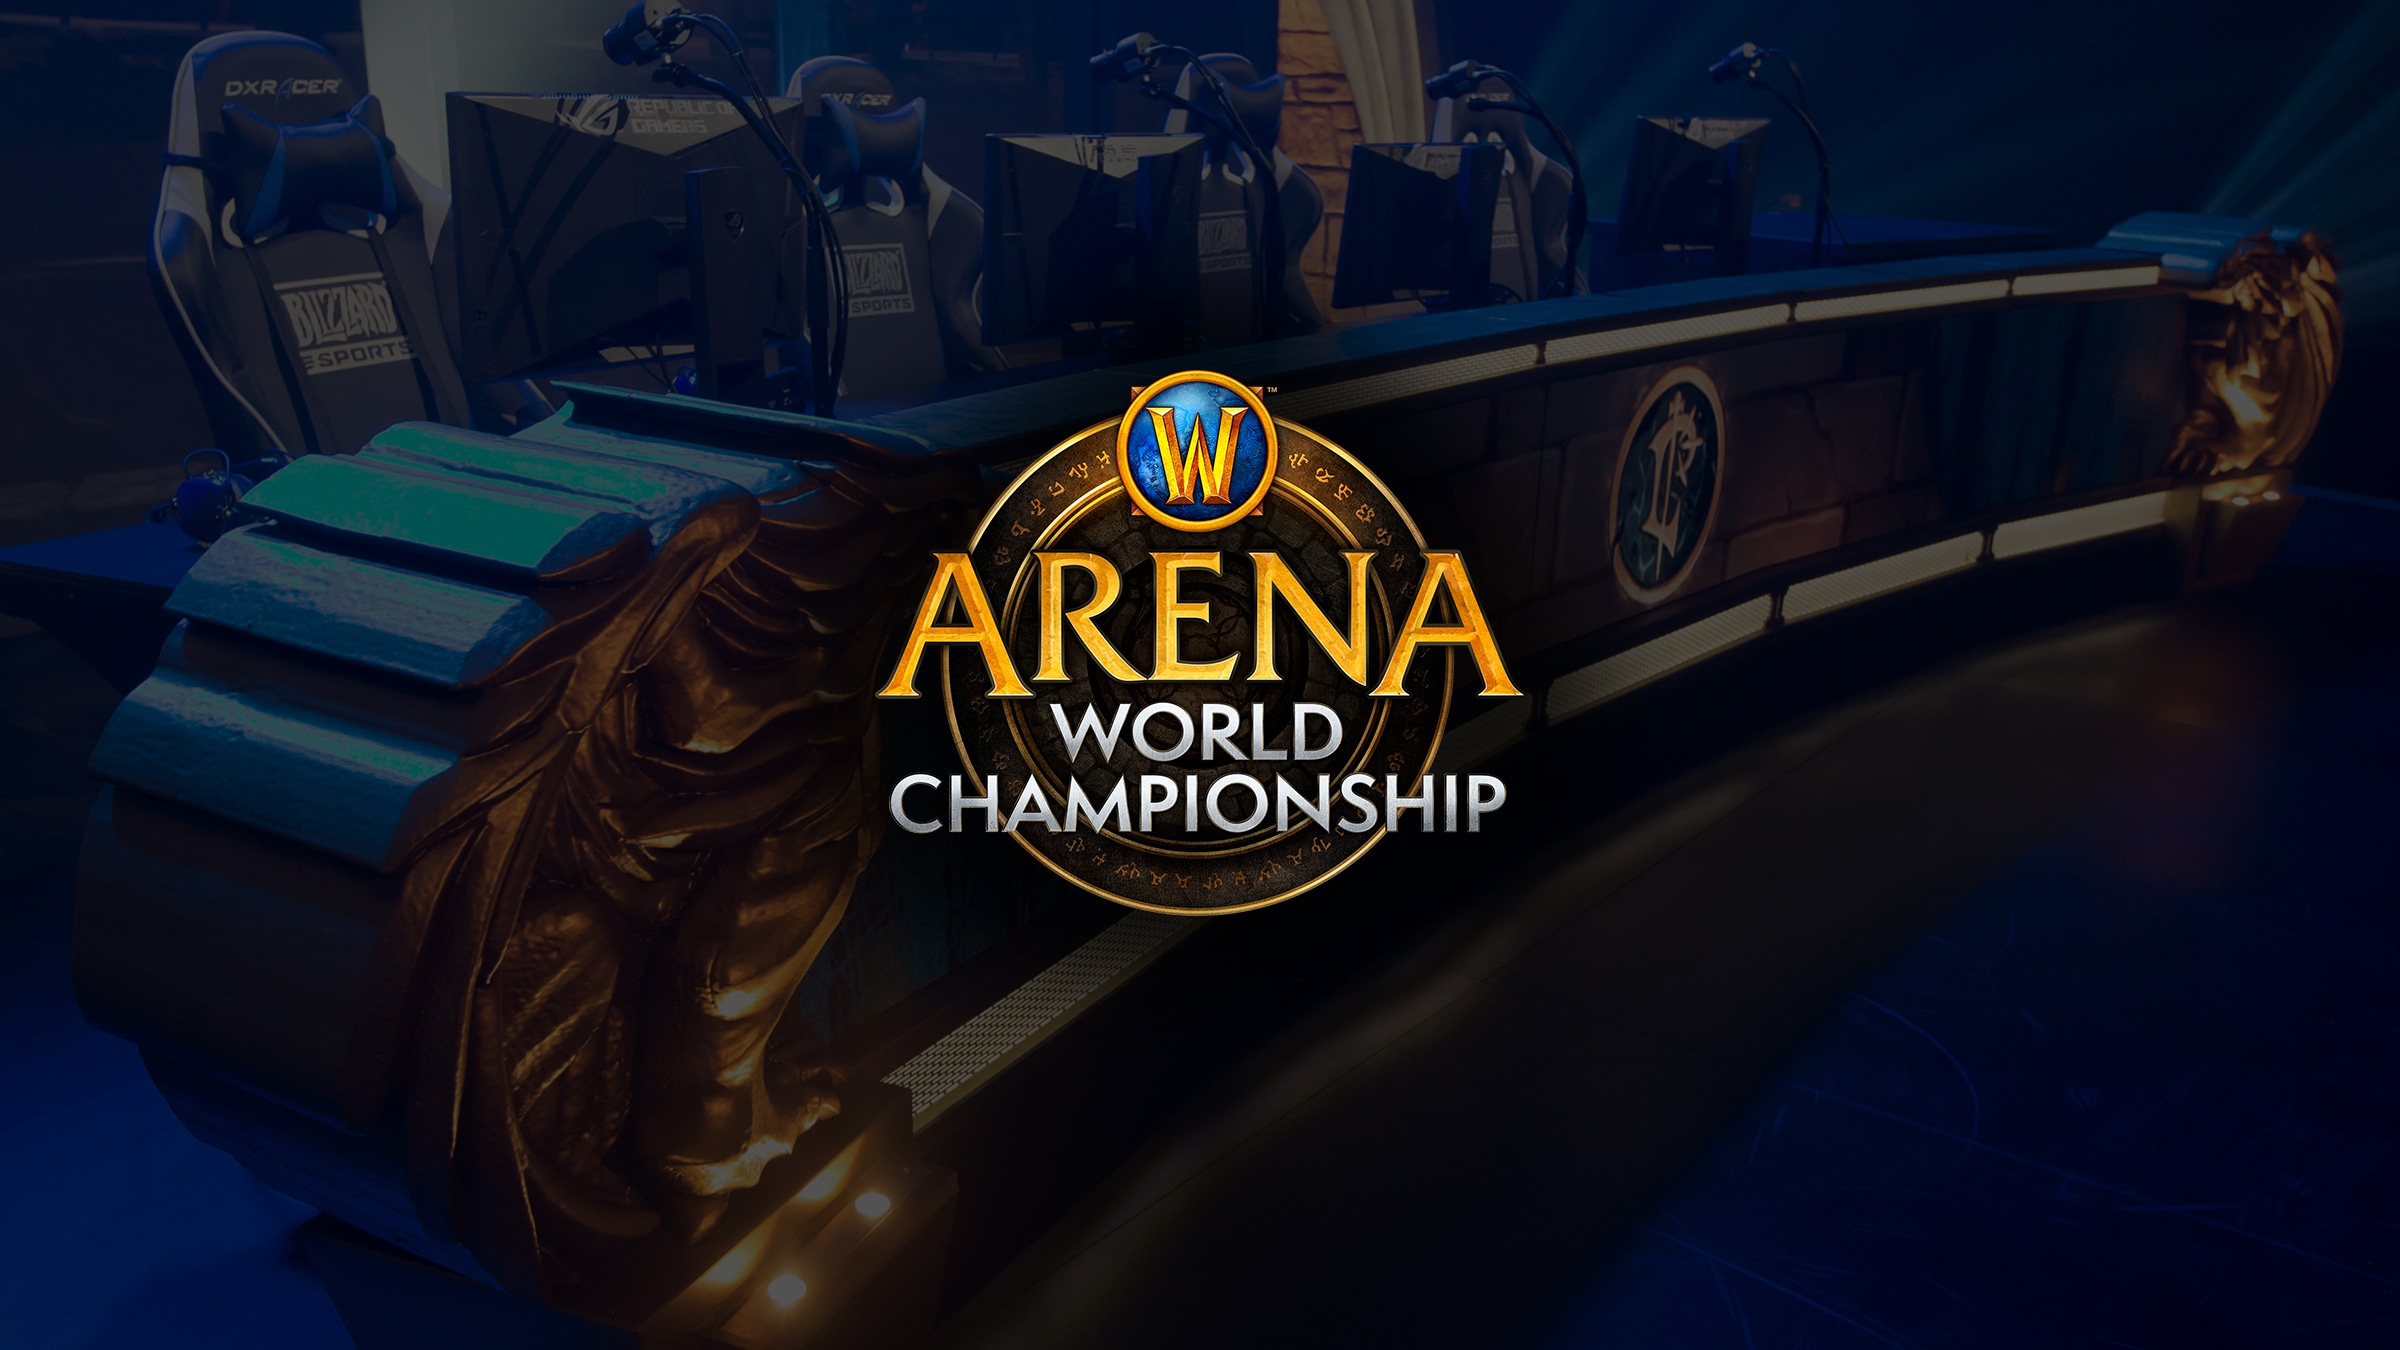 Отборочных игры WoW Arena Championship в Европы в эти выходные